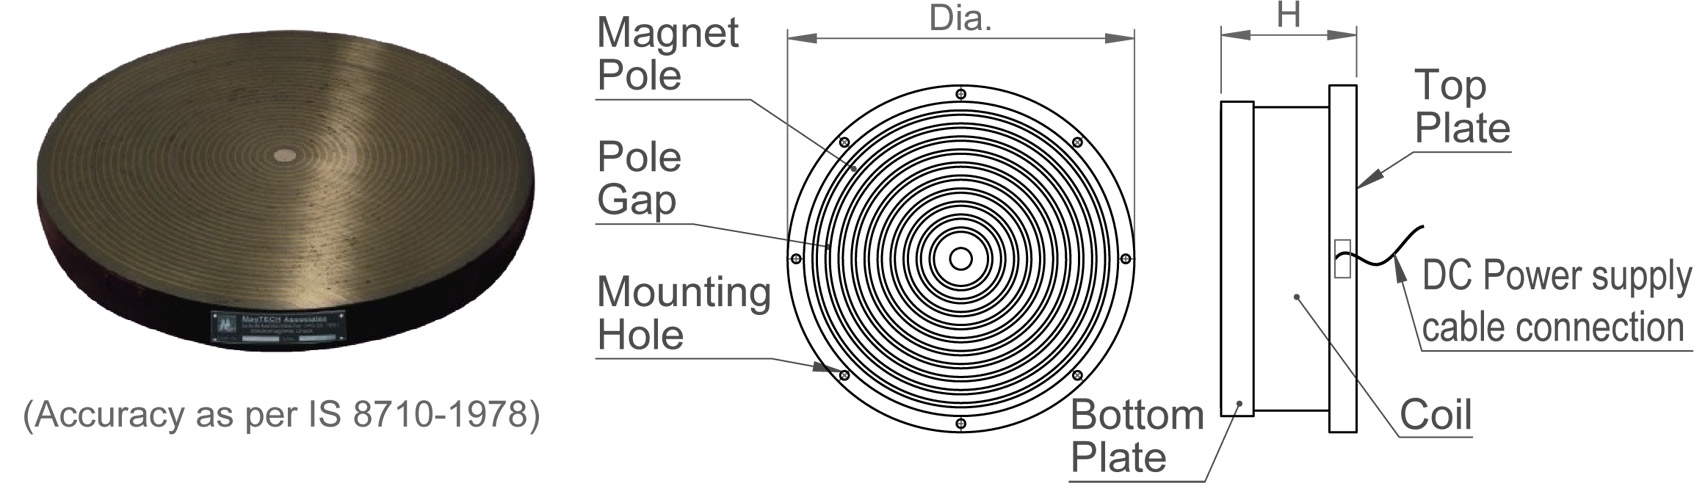 circular-electro-magnetic-chuck